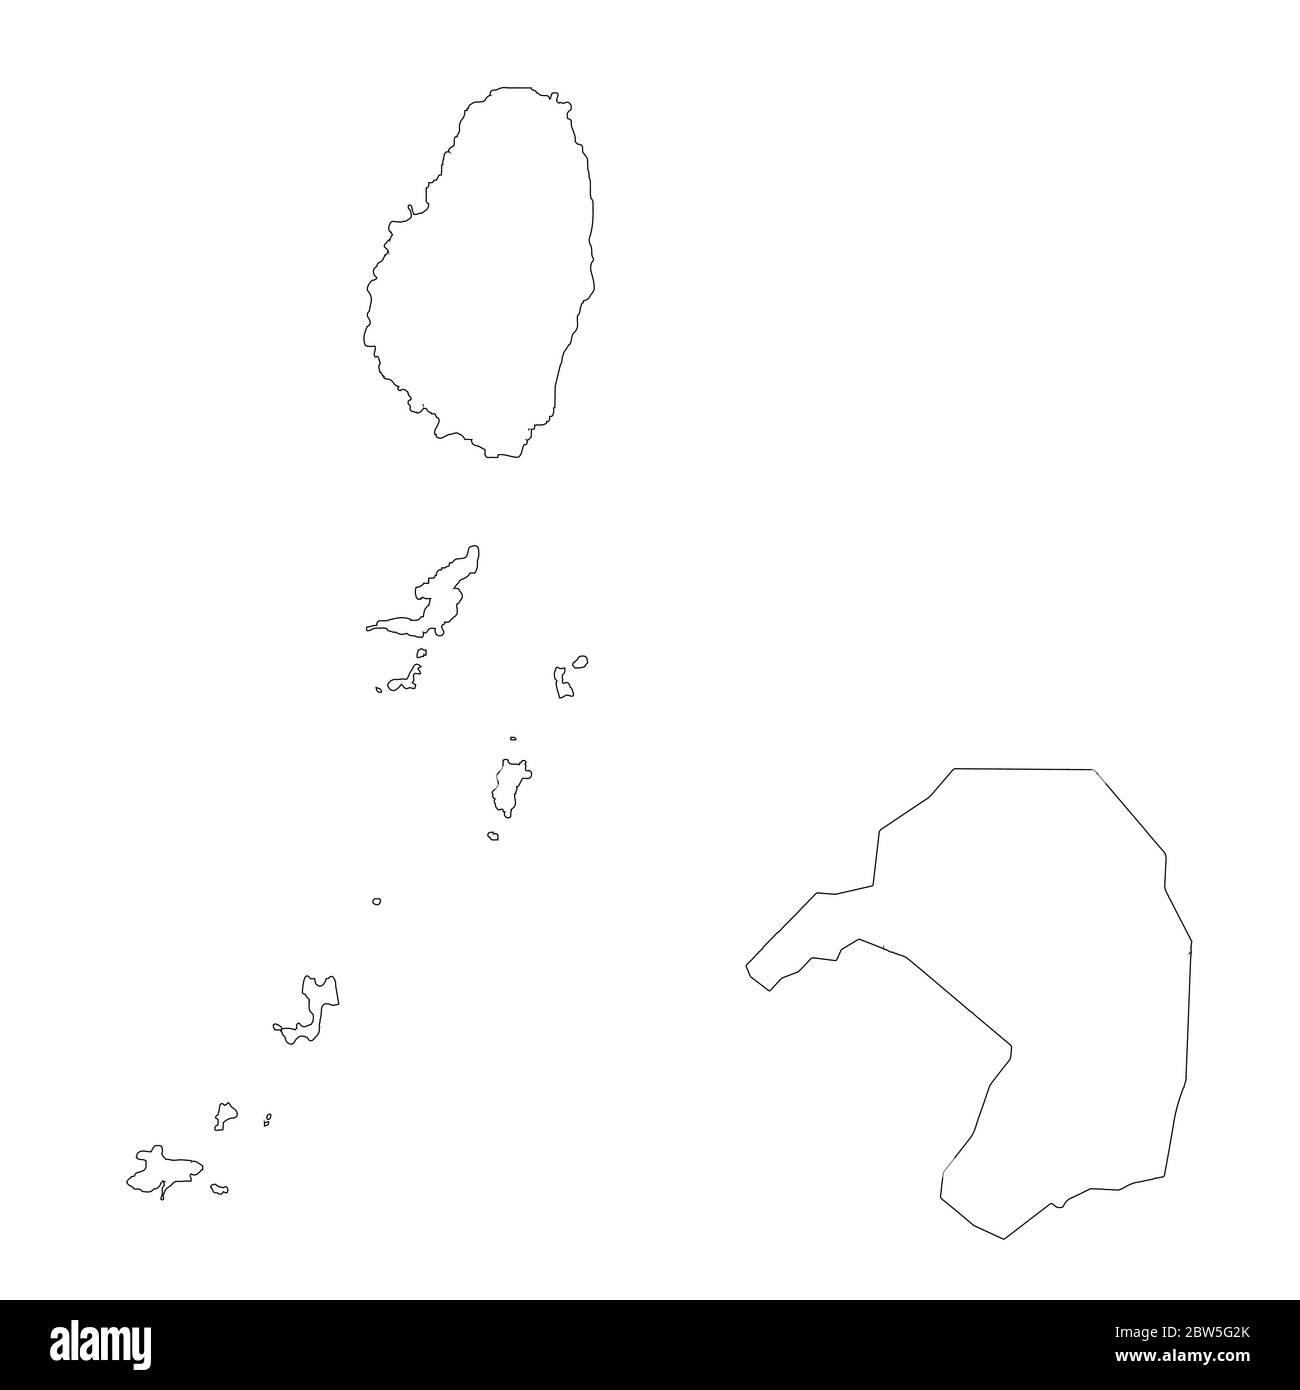 Mappa vettoriale Saint Vincent e Grenadine e Kingstown. Paese e capitale. Illustrazione vettoriale isolata. Contorno. Illustrazione EPS 10. Illustrazione Vettoriale